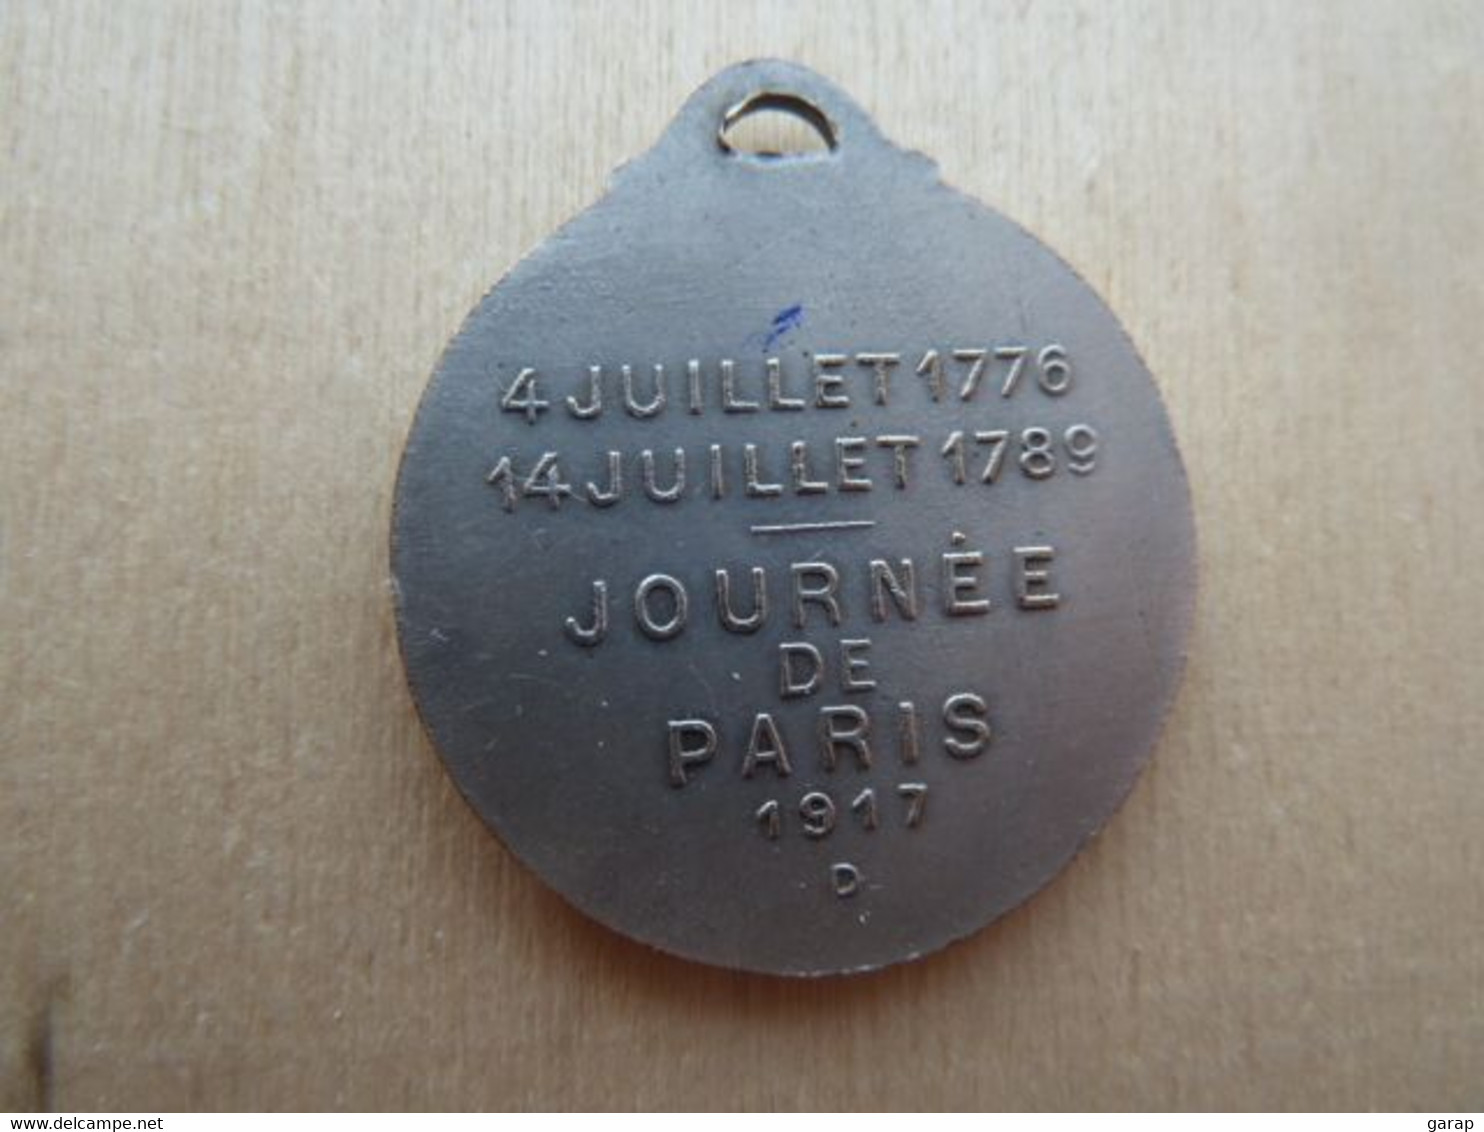 DA-126 Médaille Métal Gris Washington Lafayette Signée Gaston Lavrillier Paris -art.Journées De Paris 1917 - Magazines & Catalogues